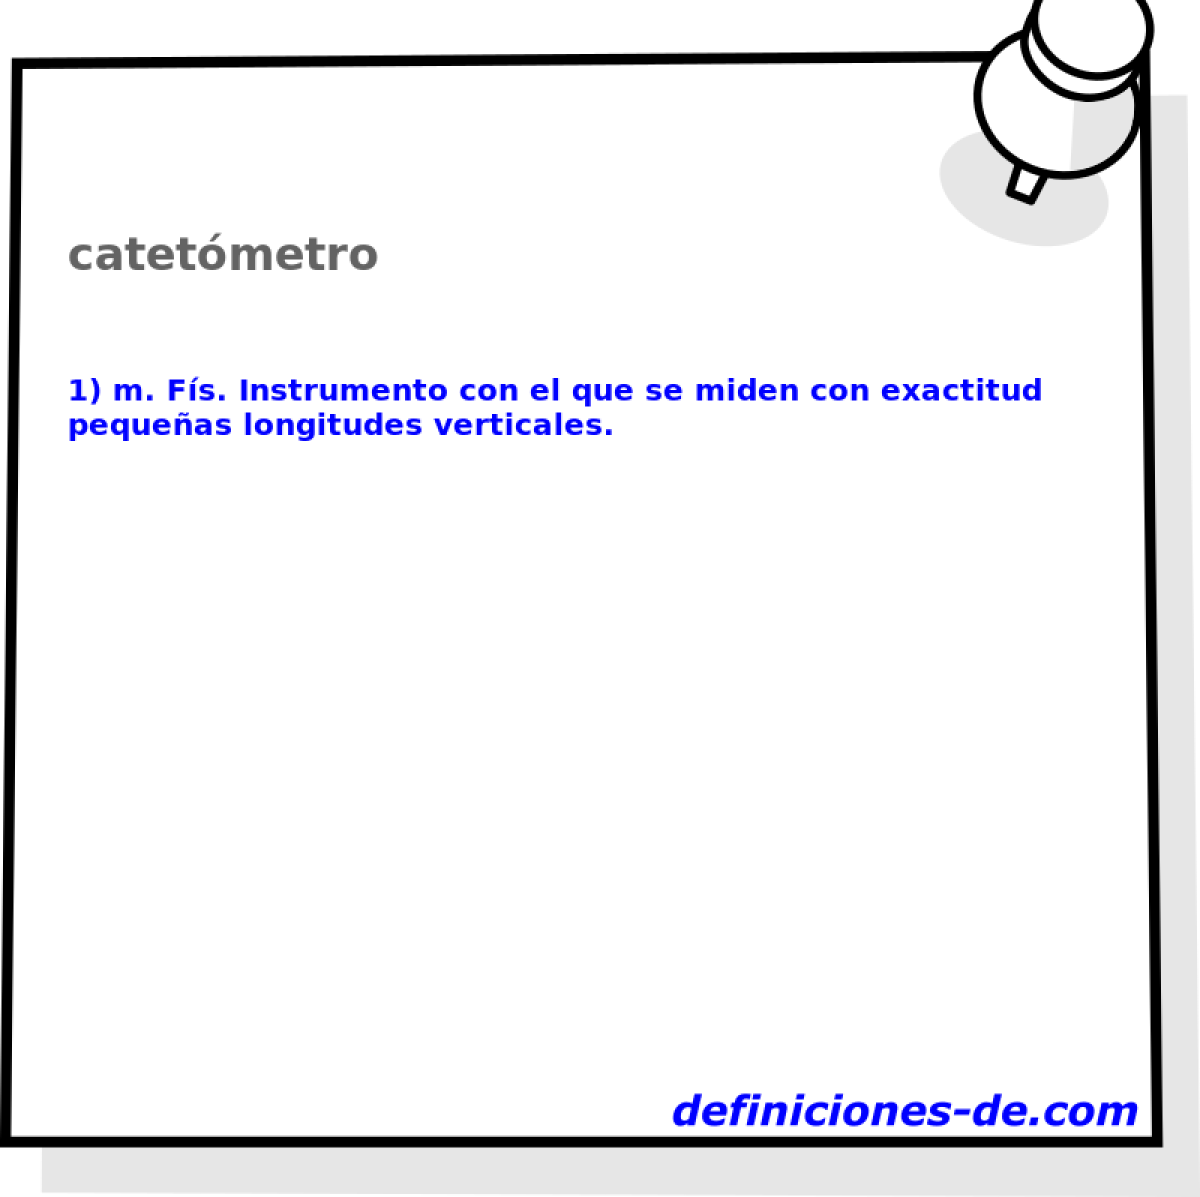 catetmetro 